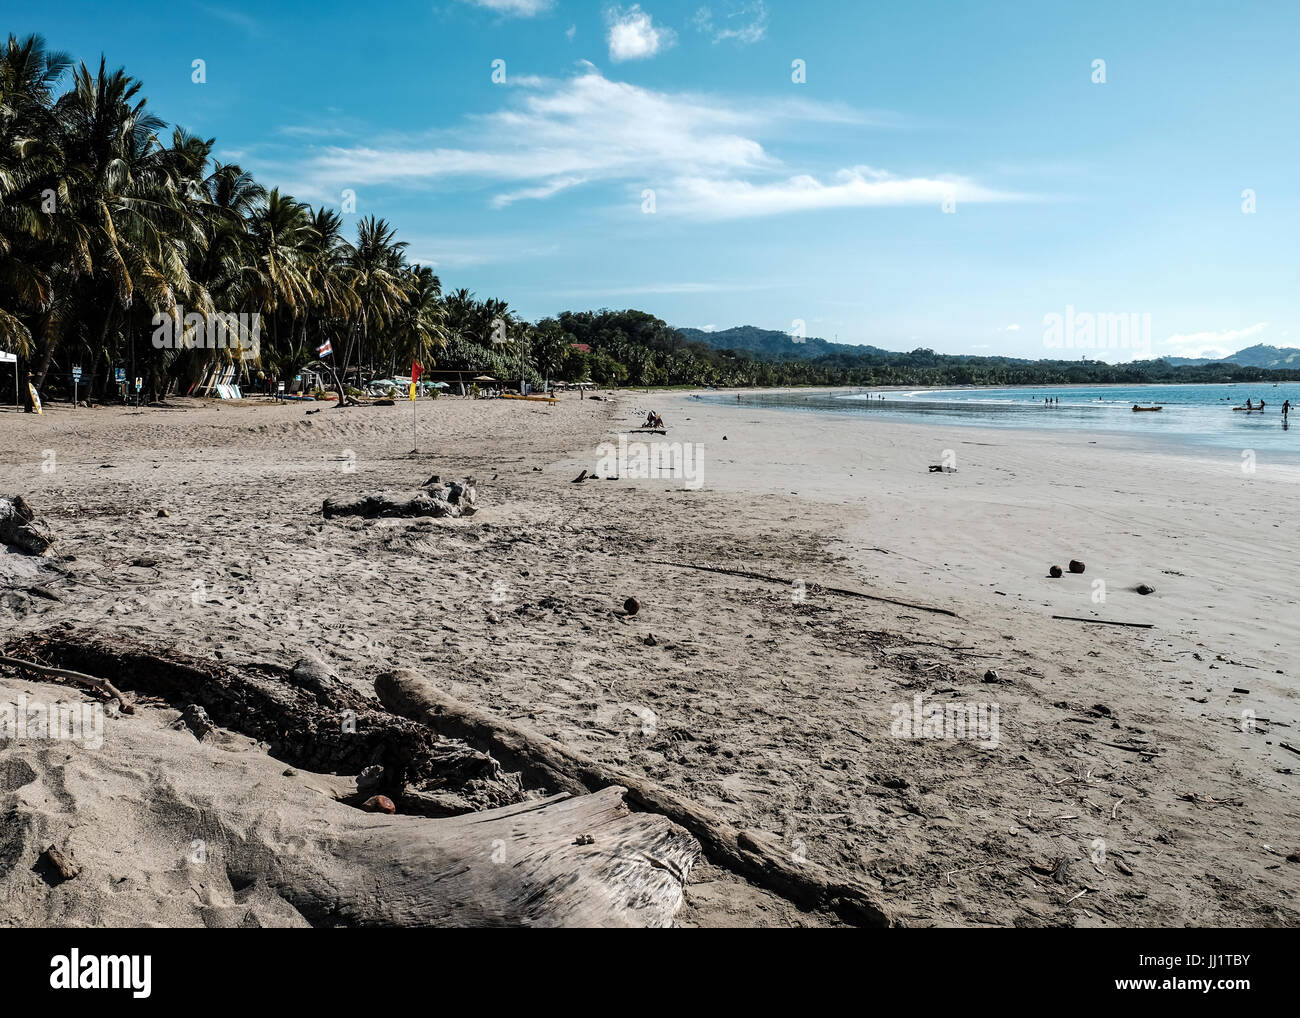 Vacaciones en la playa de Costa Rica como destino turístico turismo Océano Pacífico América Central Foto de stock